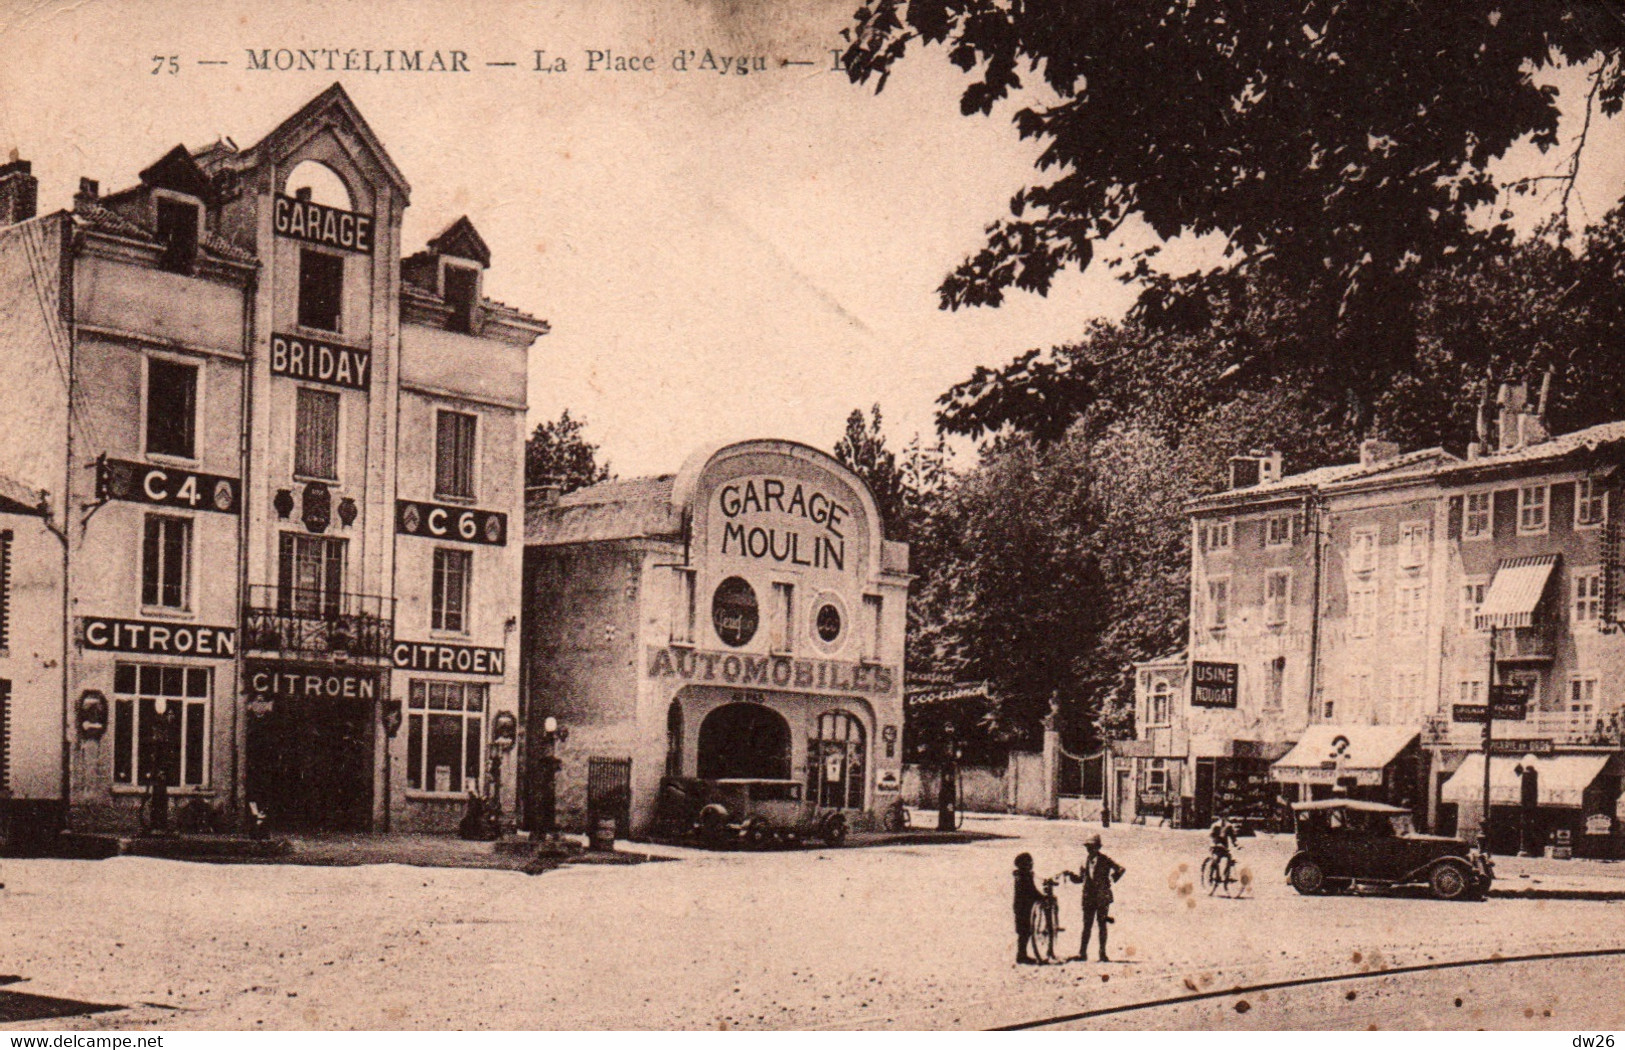 Montélimar (Drome) Place D'Aygu (Garage Moulin Et Briday) Carte N° 75 - Montelimar